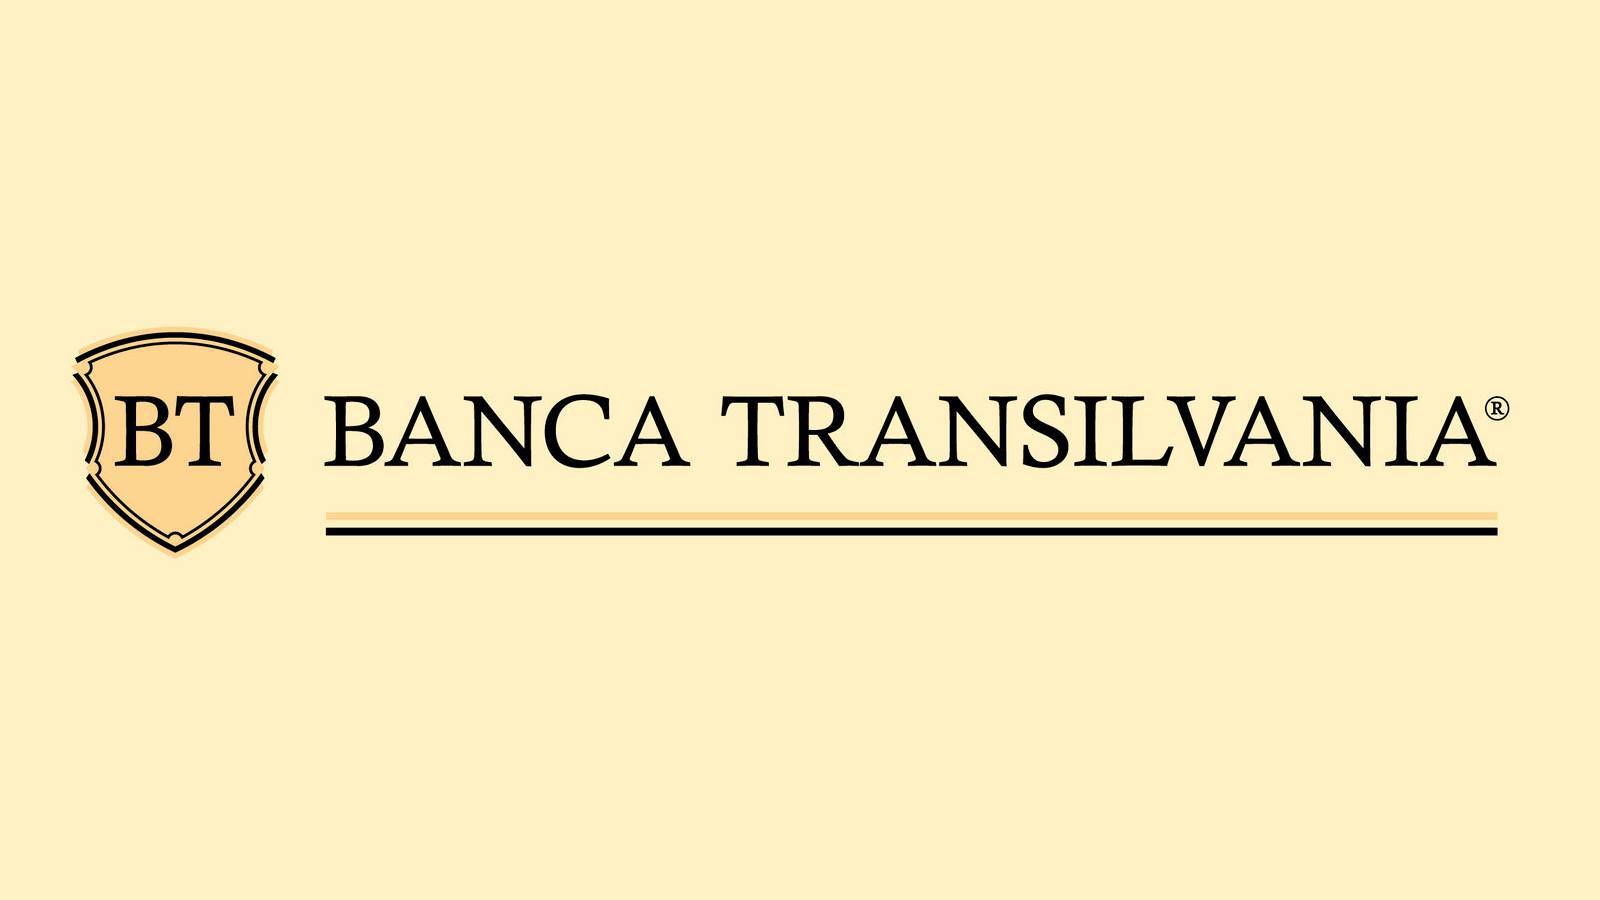 BANCA Transilvania OFFICIELL information för kunder, vad många INTE visste